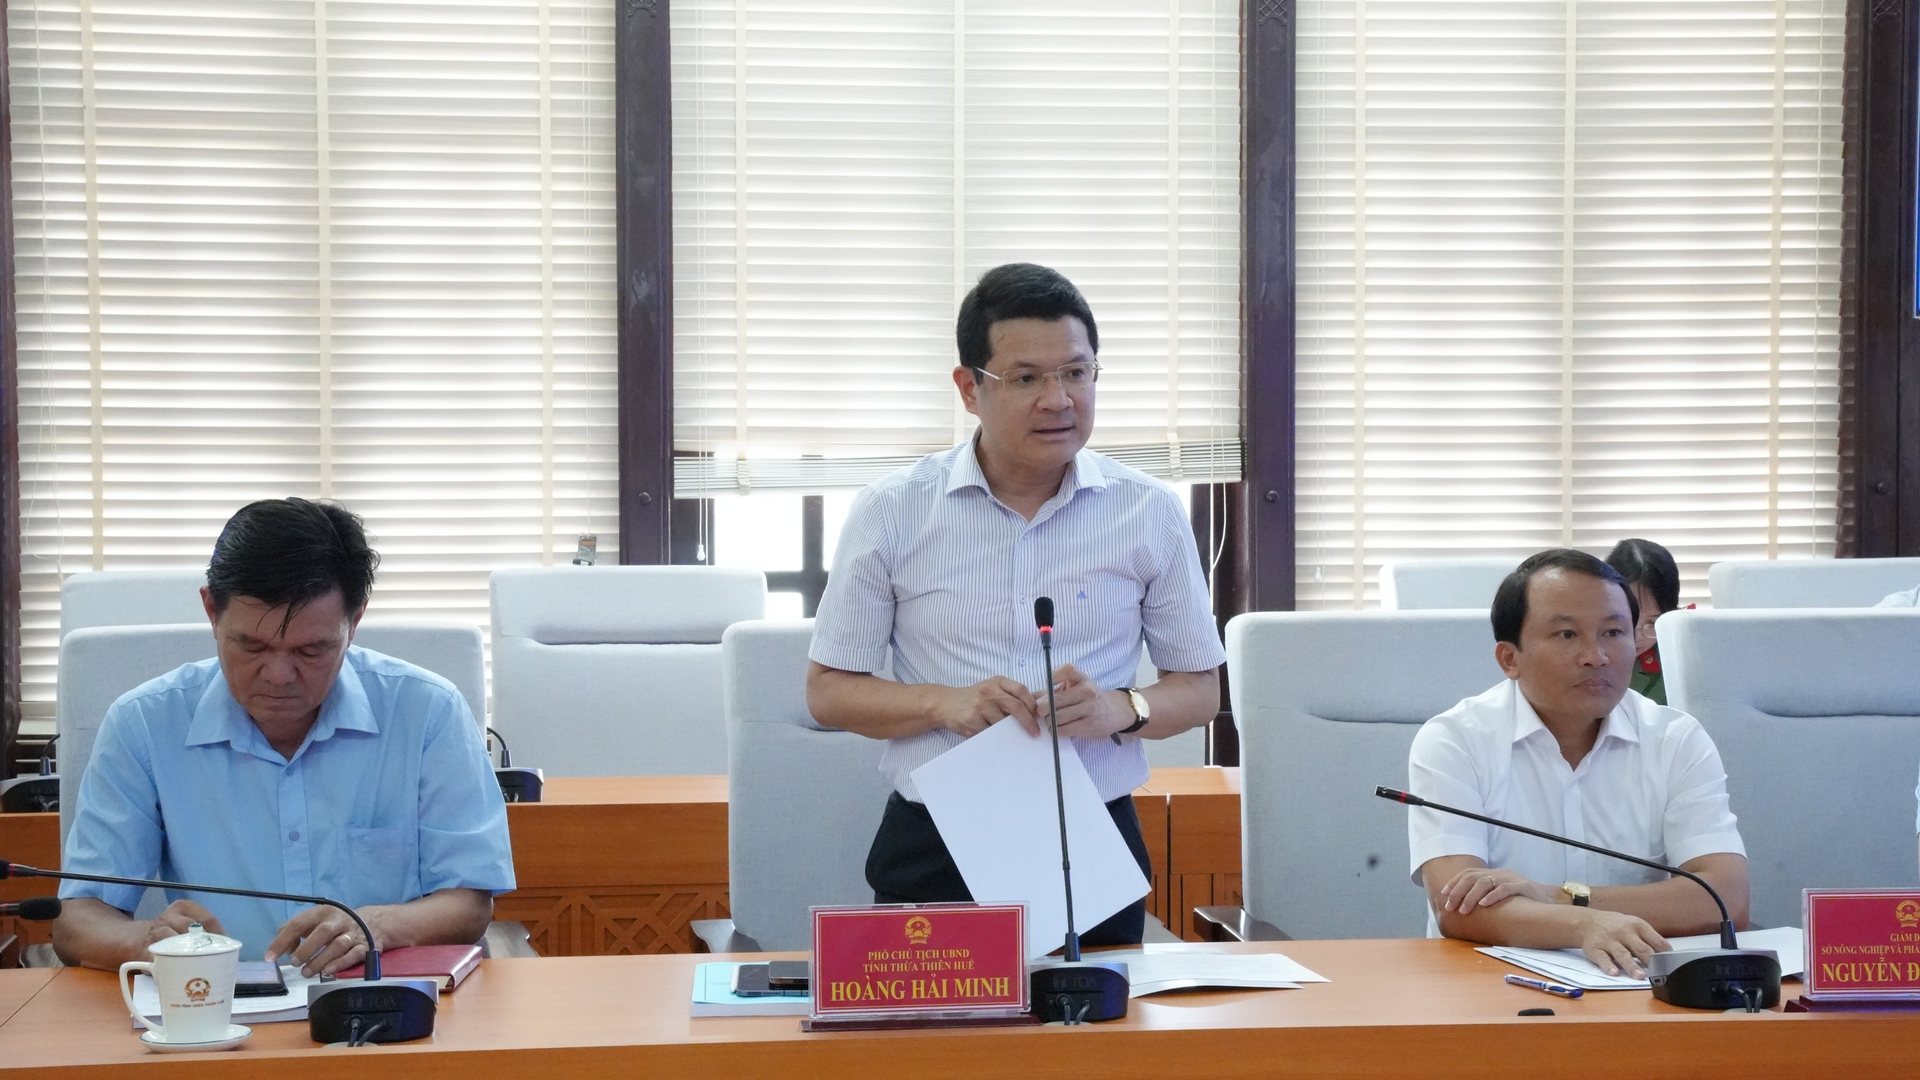 Ông Hoàng Hải Minh, Phó Chủ tịch UBND tỉnh Thừa Thiên Huế đề nghị Trung ương xem xét hỗ trợ kinh phí thực hiện một số dự án phòng chống thiên tai. Ảnh: Võ Dũng.